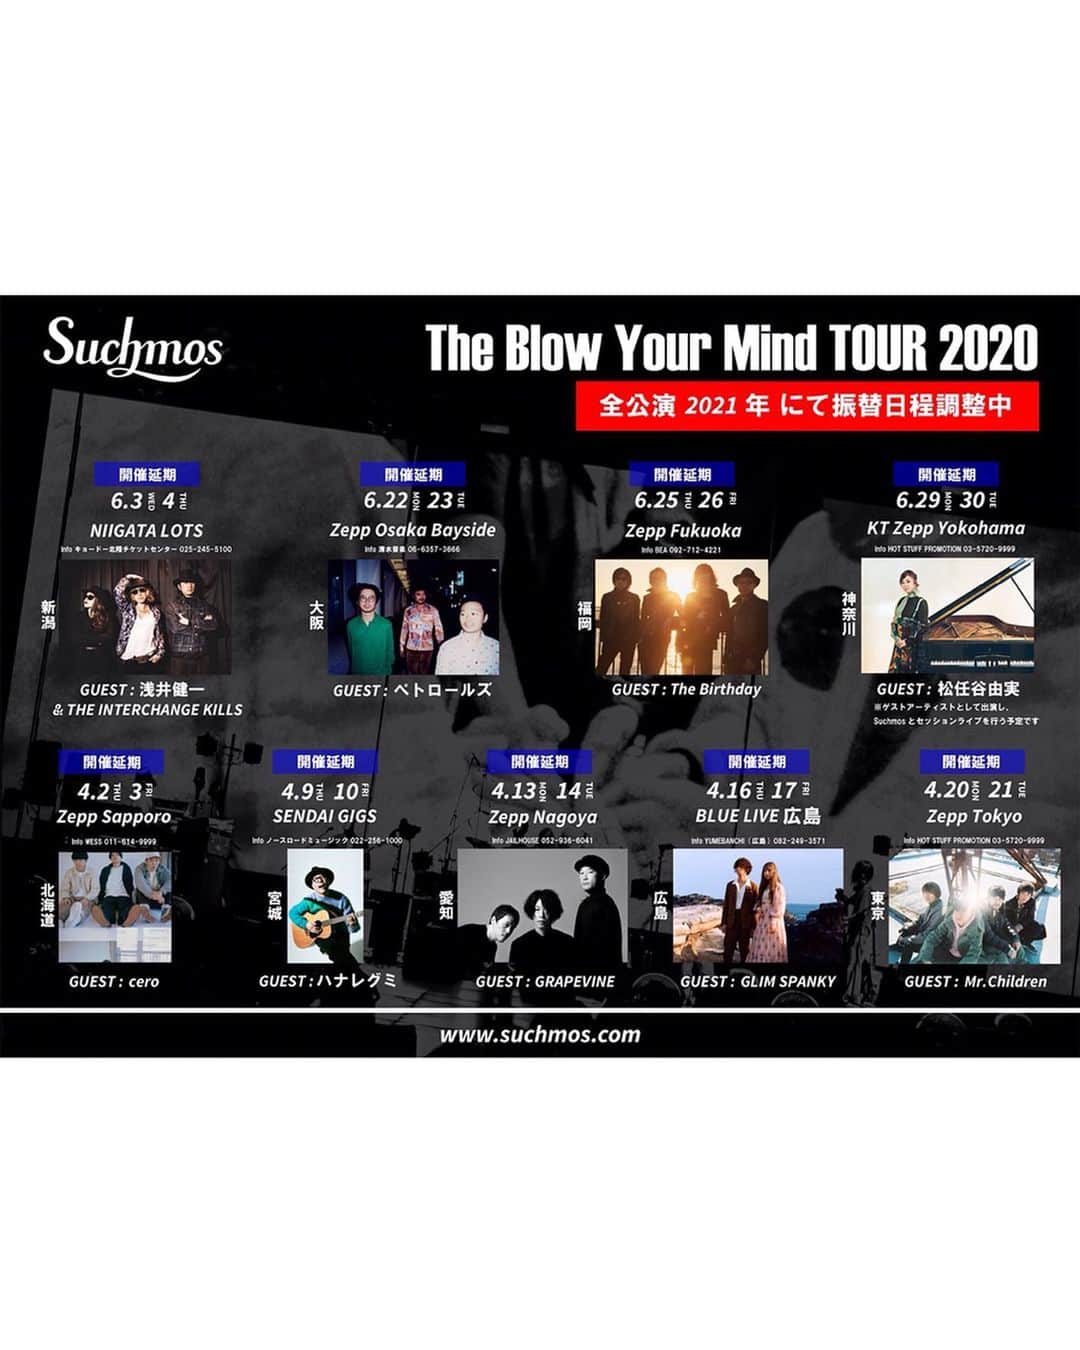 Suchmosさんのインスタグラム写真 - (SuchmosInstagram)「【大事なお知らせ】 . ‪“Suchmos The Blow Your Mind TOUR 2020” について‬ ‪. お手数ではございますが、詳しくはオフィシャルホームページよりご確認ください。‬ －－－－－－－－－－－－ Suchmos The Blow Your Mind TOUR 2020につきまして、年内での延期開催に向けて検討、調整を重ねてまいりましたが、現状の新型コロナウイルス感染拡大状況や緊急事態宣言の自粛期間延長及び会場やゲストアーティストとのスケジュール調整が難しい状況などを踏まえ、2020年内に公演を開催することは難しいと判断しました。 . メンバー、スタッフ一同 大変苦渋の決断ではございましたが、 ツアー全公演を来年2021年での開催を目指し振替日程を再調整とさせて頂きます。 ツアーを楽しみにしてくださっているお客様には大変申し訳ございませんが、開催に向けて何卒ご理解とご協力の程よろしくお願い致します。 . つきましては、既に延期先の日程を発表しております公演も含め、以下ツアー全公演が振替調整の対象となります。 . 「Suchmos The Blow Your Mind TOUR 2020」 ・4月2日(木)、3日(金) 北海道／Zepp Sapporo ゲスト：cero . ・4月9日(木)、10日(金) 宮城／SENDAI GIGS ゲスト：ハナレグミ . ・4月13日(月)、14日(火) 愛知／Zepp Nagoya ゲスト：GRAPEVINE . ・4月16日(木)、17日(金) 広島／BLUE LIVE 広島 ゲスト：GLIM SPANKY . ・4月20日(月)、21日(火) 東京／Zepp Tokyo ゲスト：Mr.Children ------------------------------------- ・6月3日(水)、4日(木) 新潟／LOTS ゲスト：浅井健一&THE INTERCHANGE KILLS（延期公演） . ・6月22日(月)、23日(火) 大阪／Zepp Osaka Bayside ゲスト：ペトロールズ（延期公演） . ・6月25日(木)、26日(金) 福岡／Zepp Fukuoka ゲスト：The Birthday（延期公演） . ・6月29日(月)、30日(火) 神奈川／KT Zepp Yokohama ゲスト：松任谷由実（延期公演） . 振替公演の実施を調整してまいりますが、出演者・会場スケジュール及び、今後の新型コロナウイルス感染症の収束、日本政府の方針を受けての判断となりますので、詳細のアナウンスまで今しばらくお待ち下さい。 やむを得ず公演中止となる場合もございますので、あらかじめご了承ください。 . チケットに関するご案内など、詳しくはSuchmos オフィシャルホームページ(www.suchmos.com)よりご確認ください。 . 一刻も早い事態の収束と、お客様に再びお会いできる日が来ることを、心より願っております。 . Suchmos 株式会社スペースシャワーネットワーク」5月7日 18時01分 - scm_japan